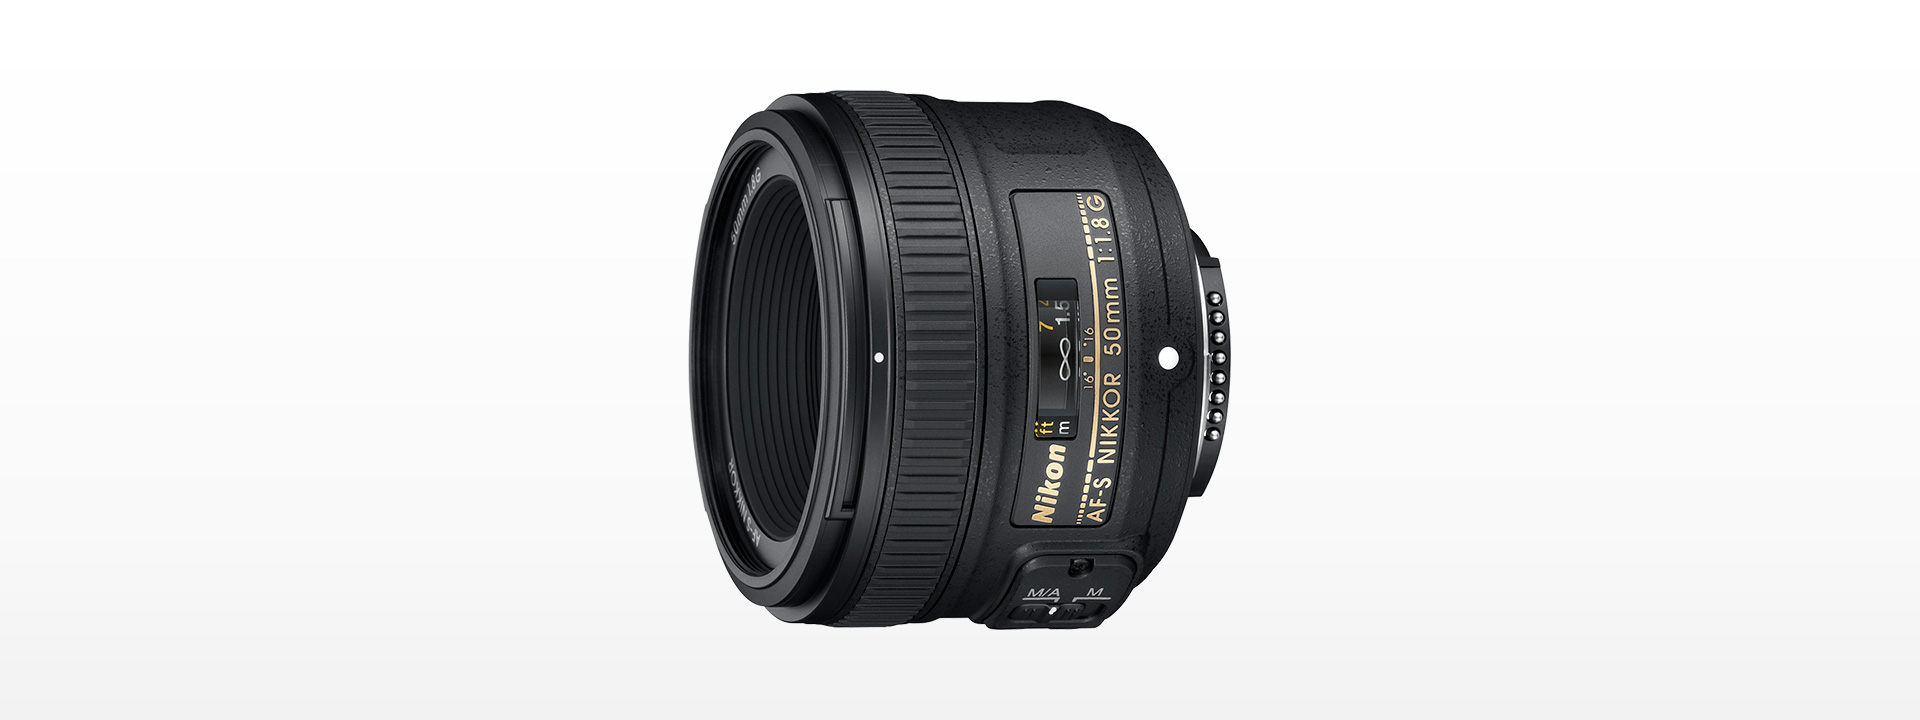 【新品級】Nikonニコン AF-S Nikkor 50mm f/1.8G